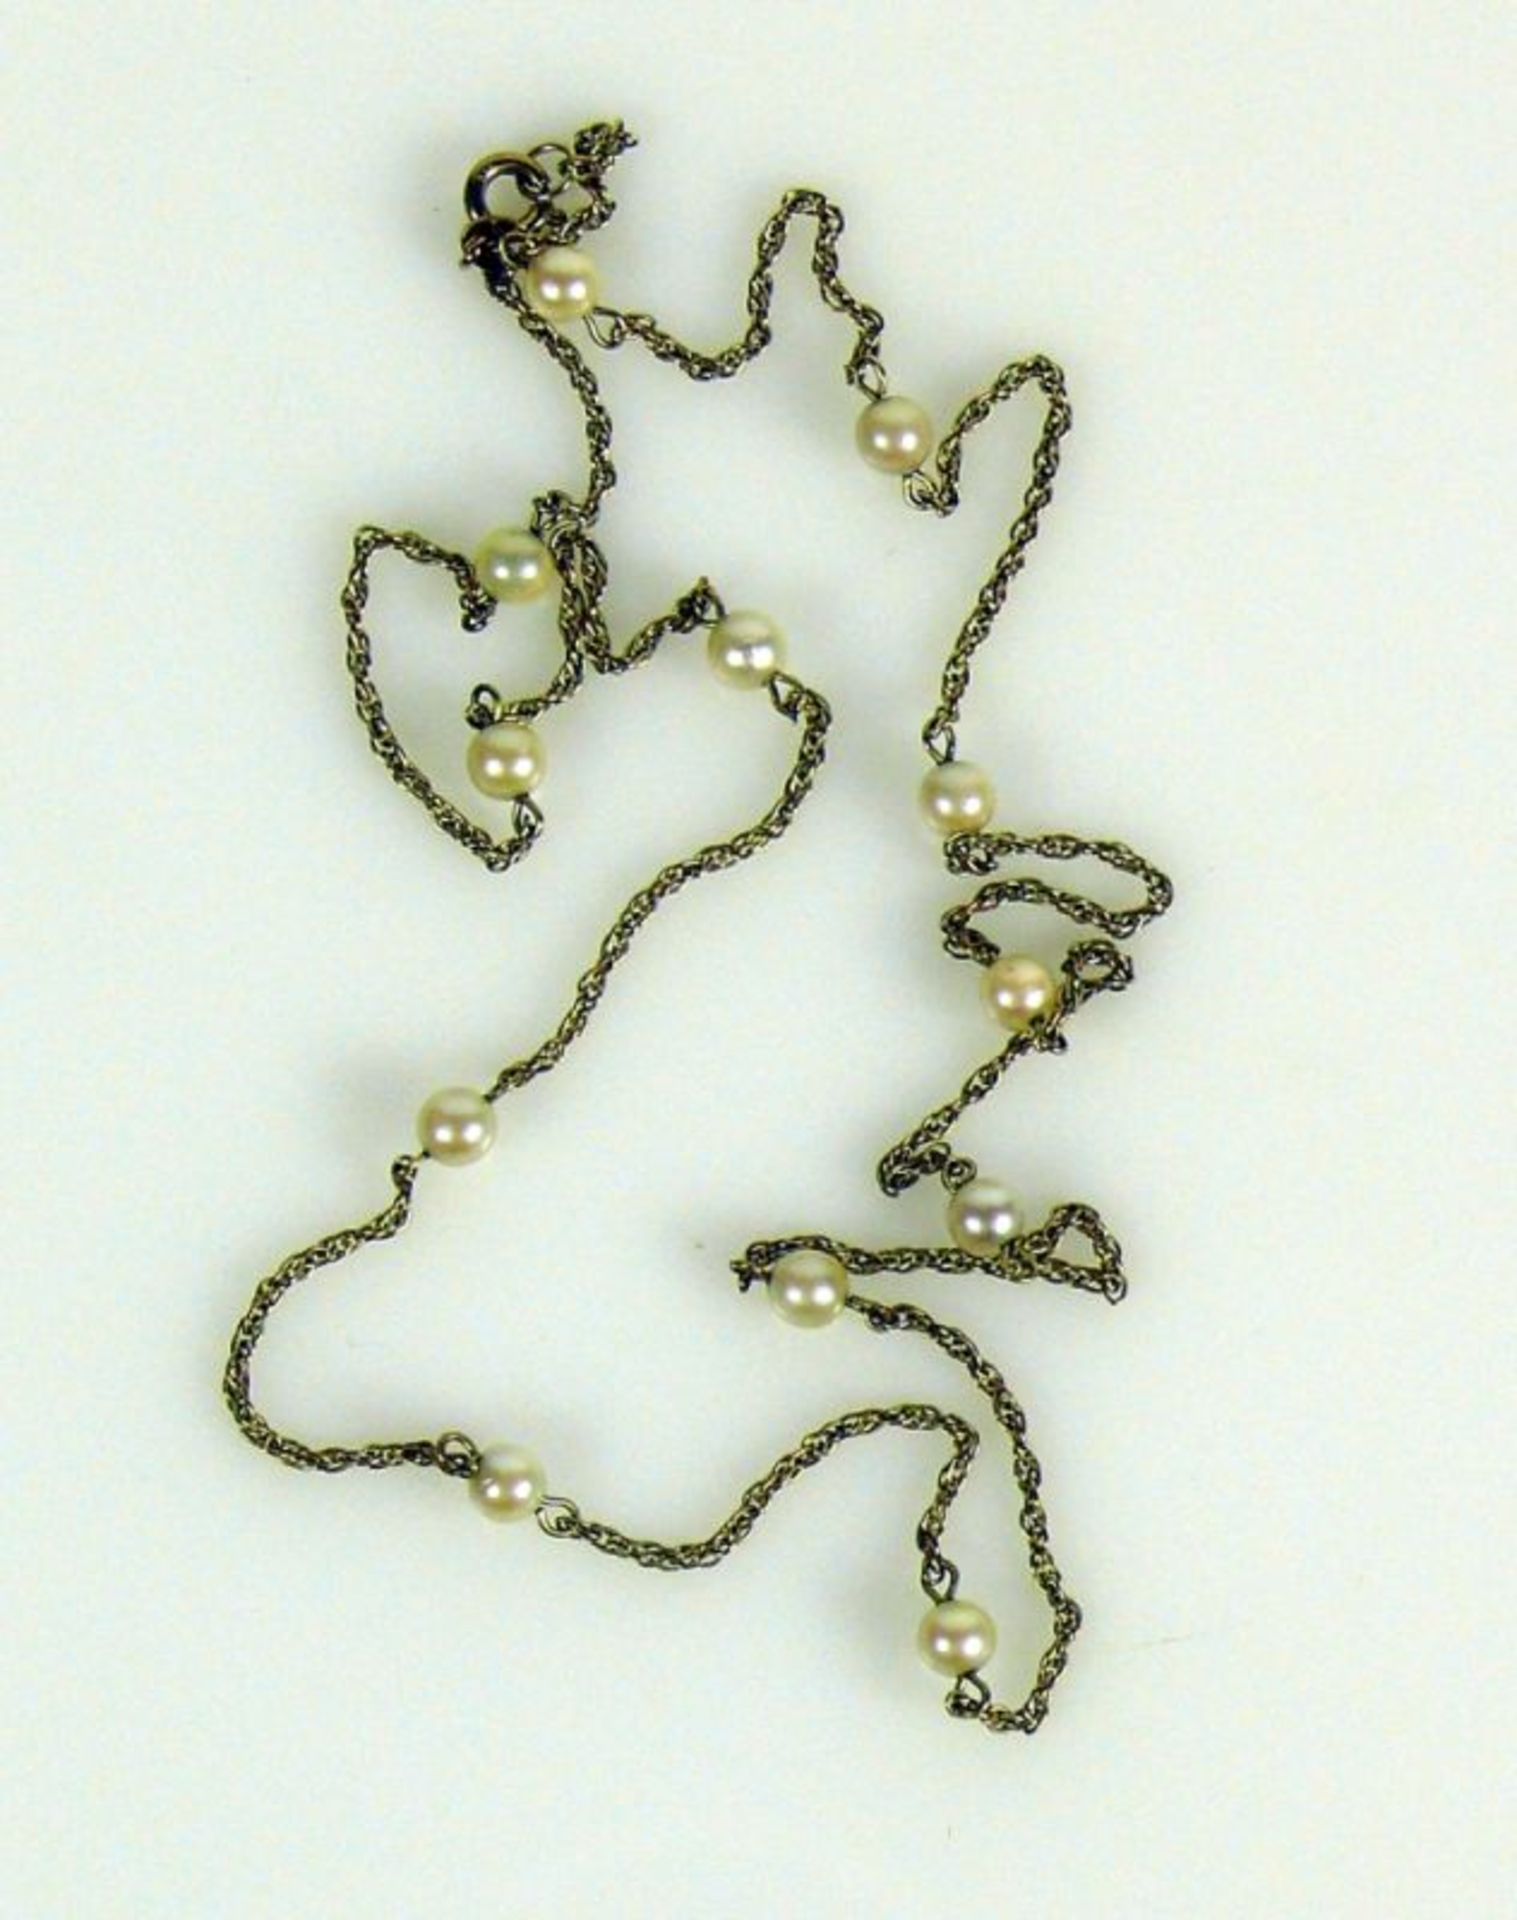 Halskette 8ct GG; mit 12 kl. Perlen besetzt; L: ca. 55 cm; 4,5g - Bild 2 aus 2